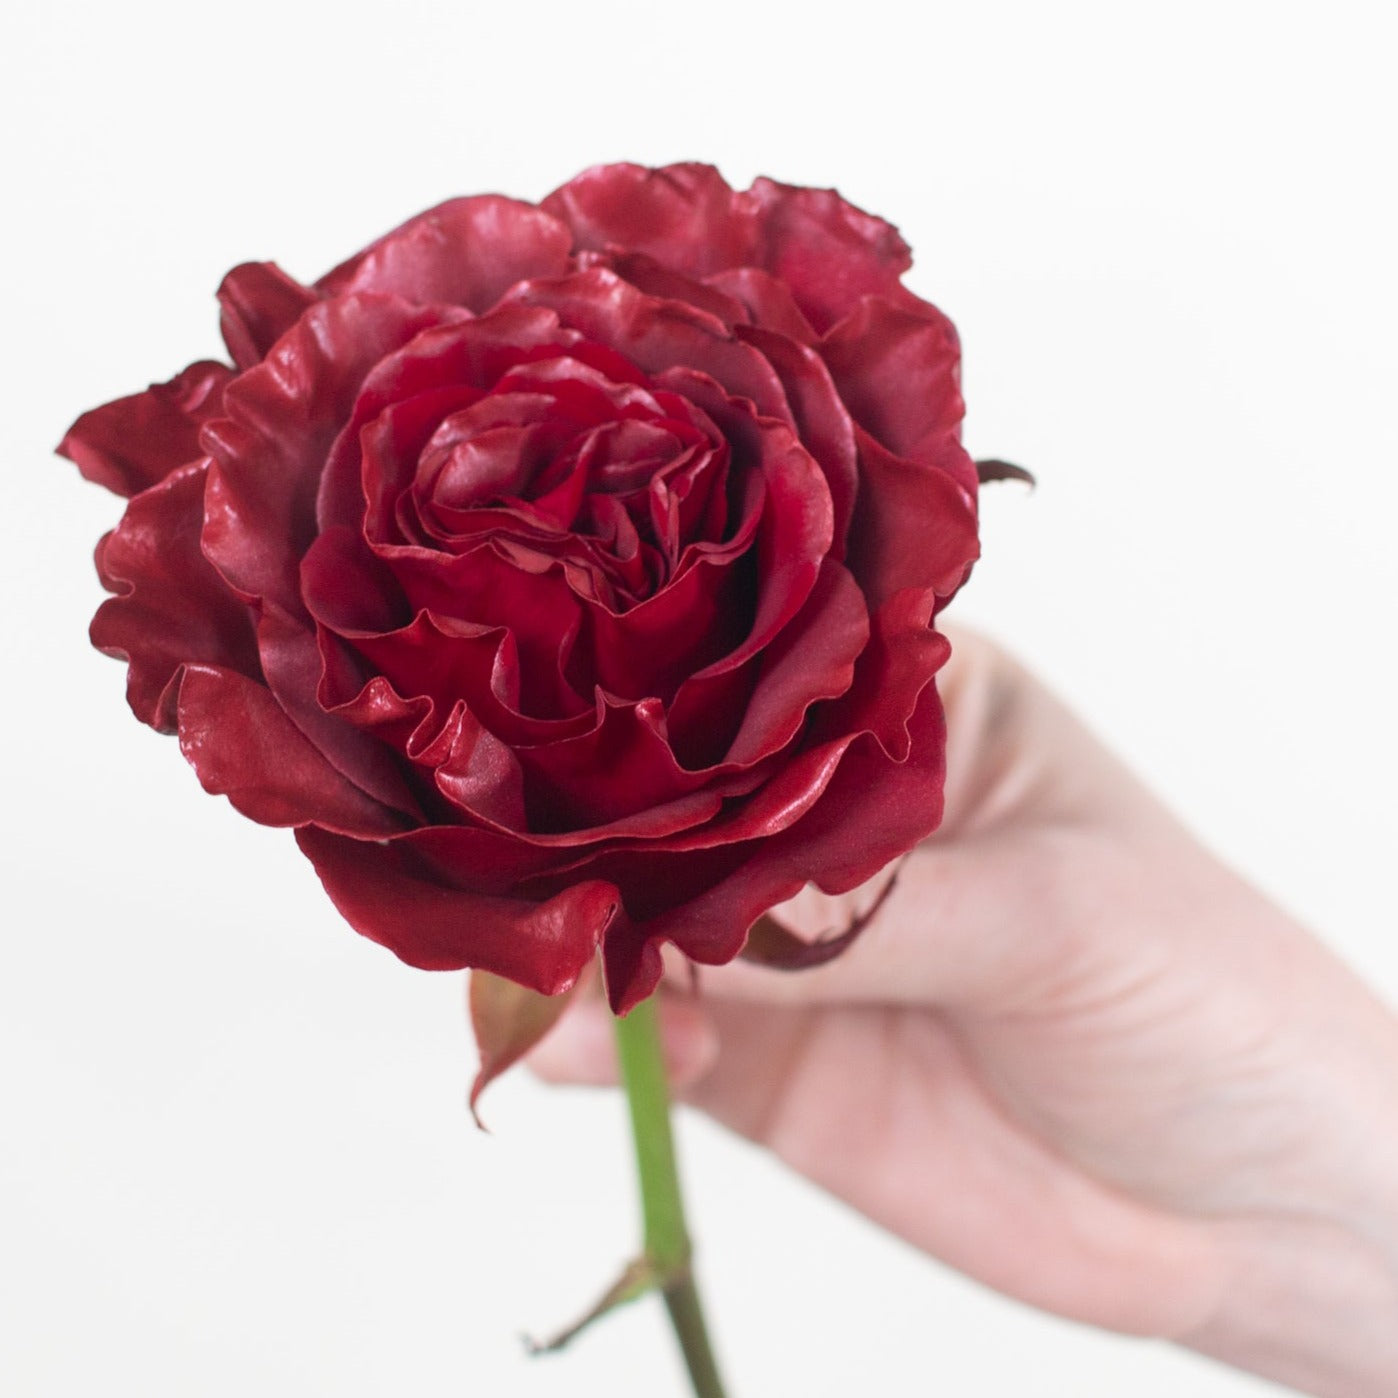 bulk red rose